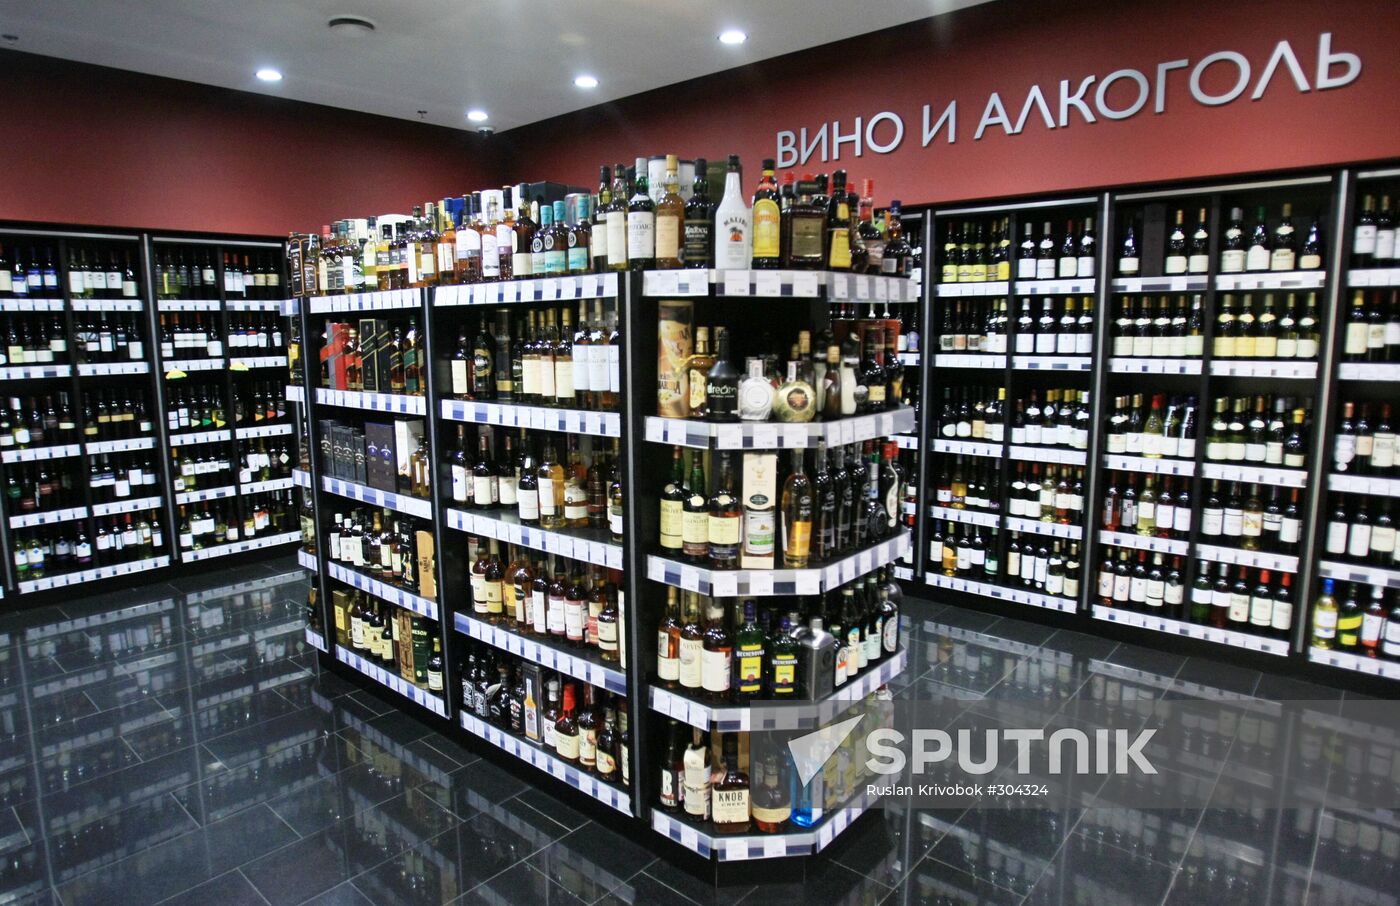 Azbuka Vkusa supermarket